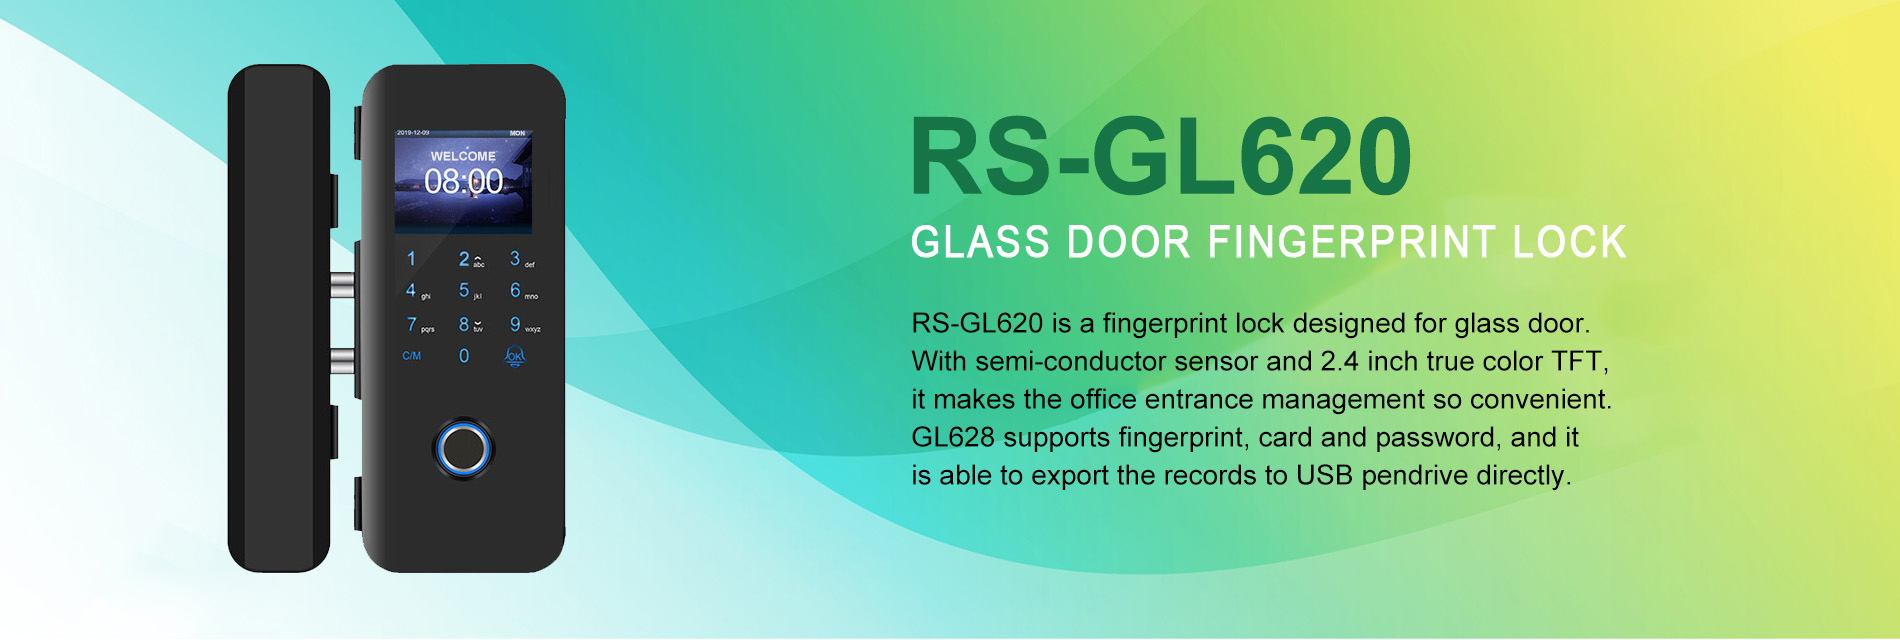 Glass door fingerprint lock